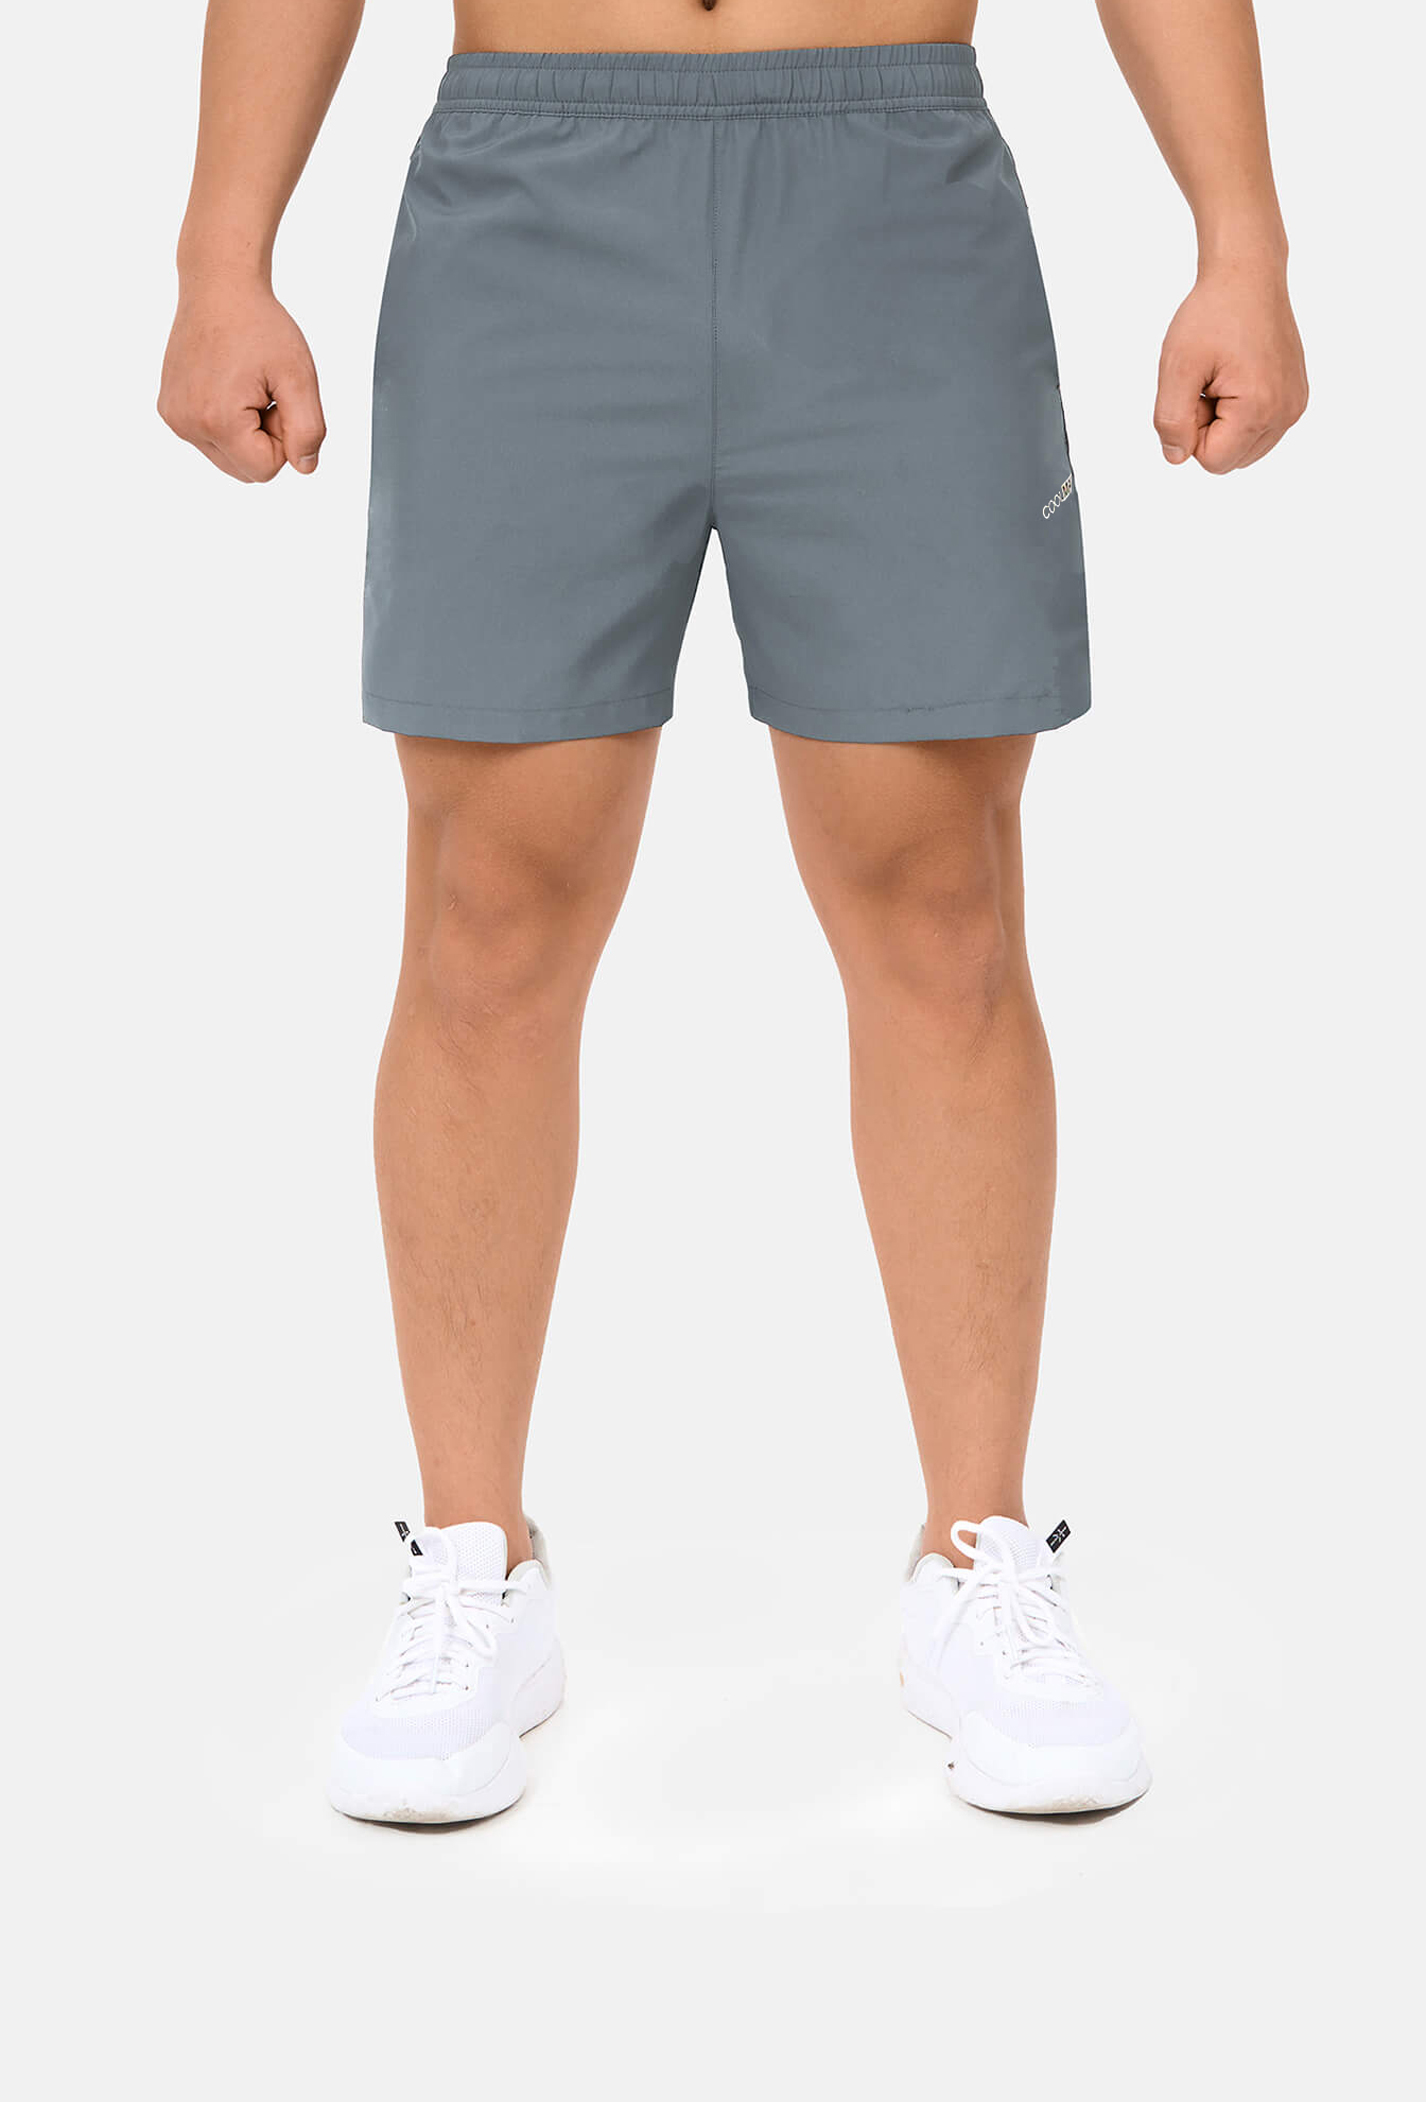 Quần shorts nam thể thao 5" xẻ gấu cao (túi sau có khóa kéo) Xám xanh